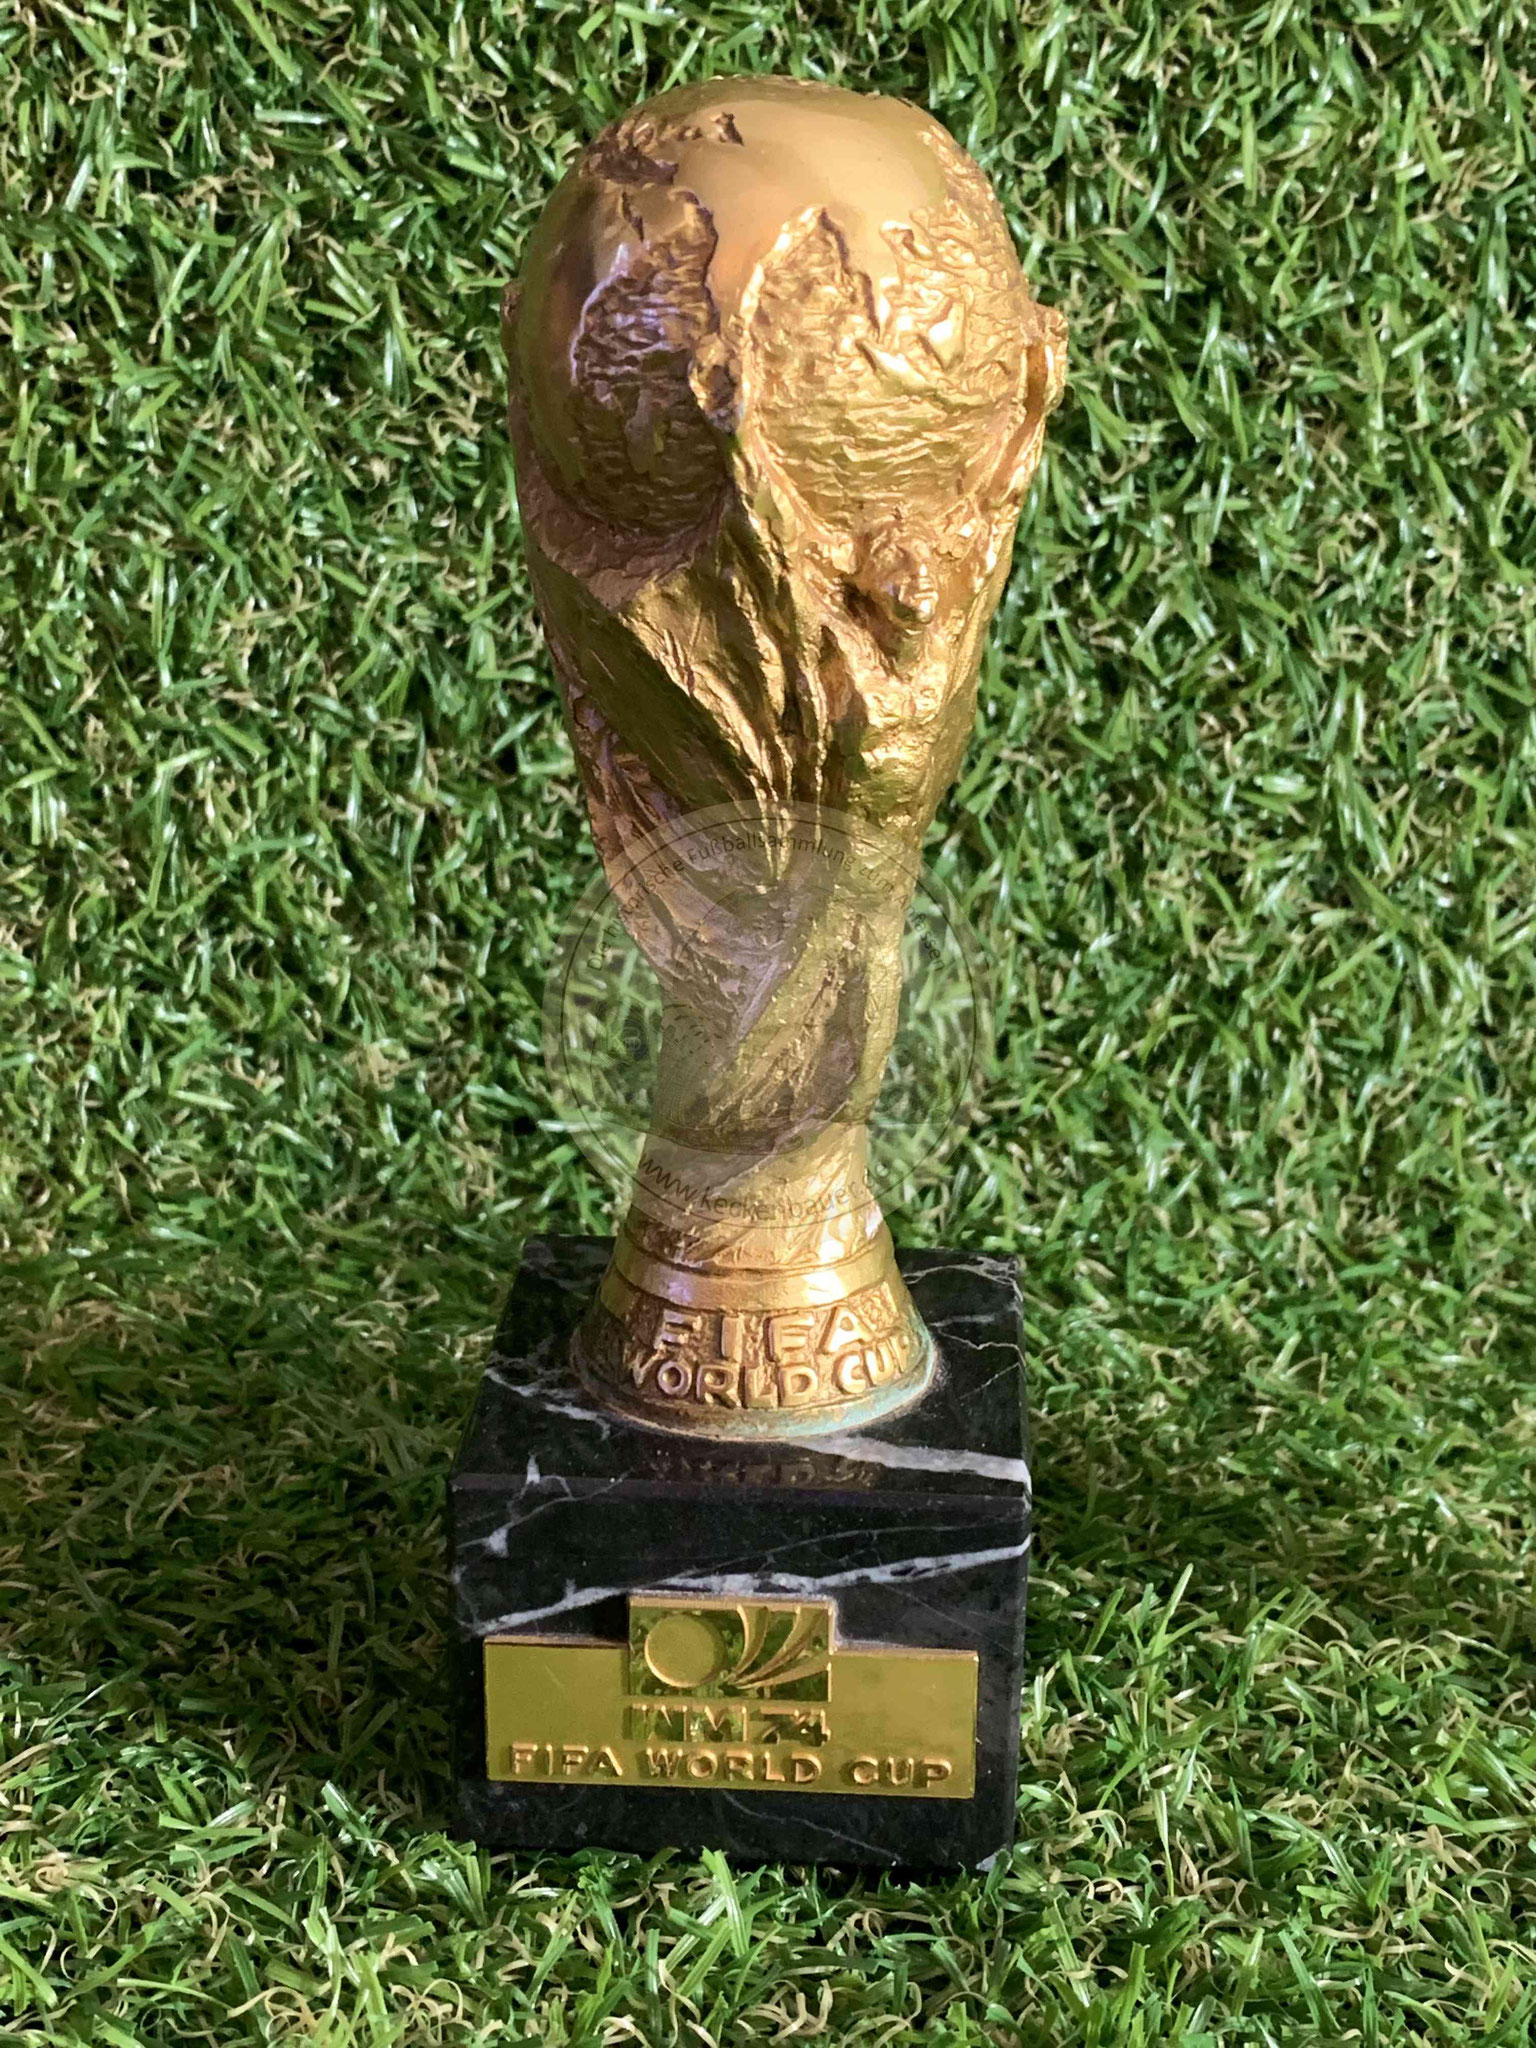 Original Miniatur WM Pokal von 1974